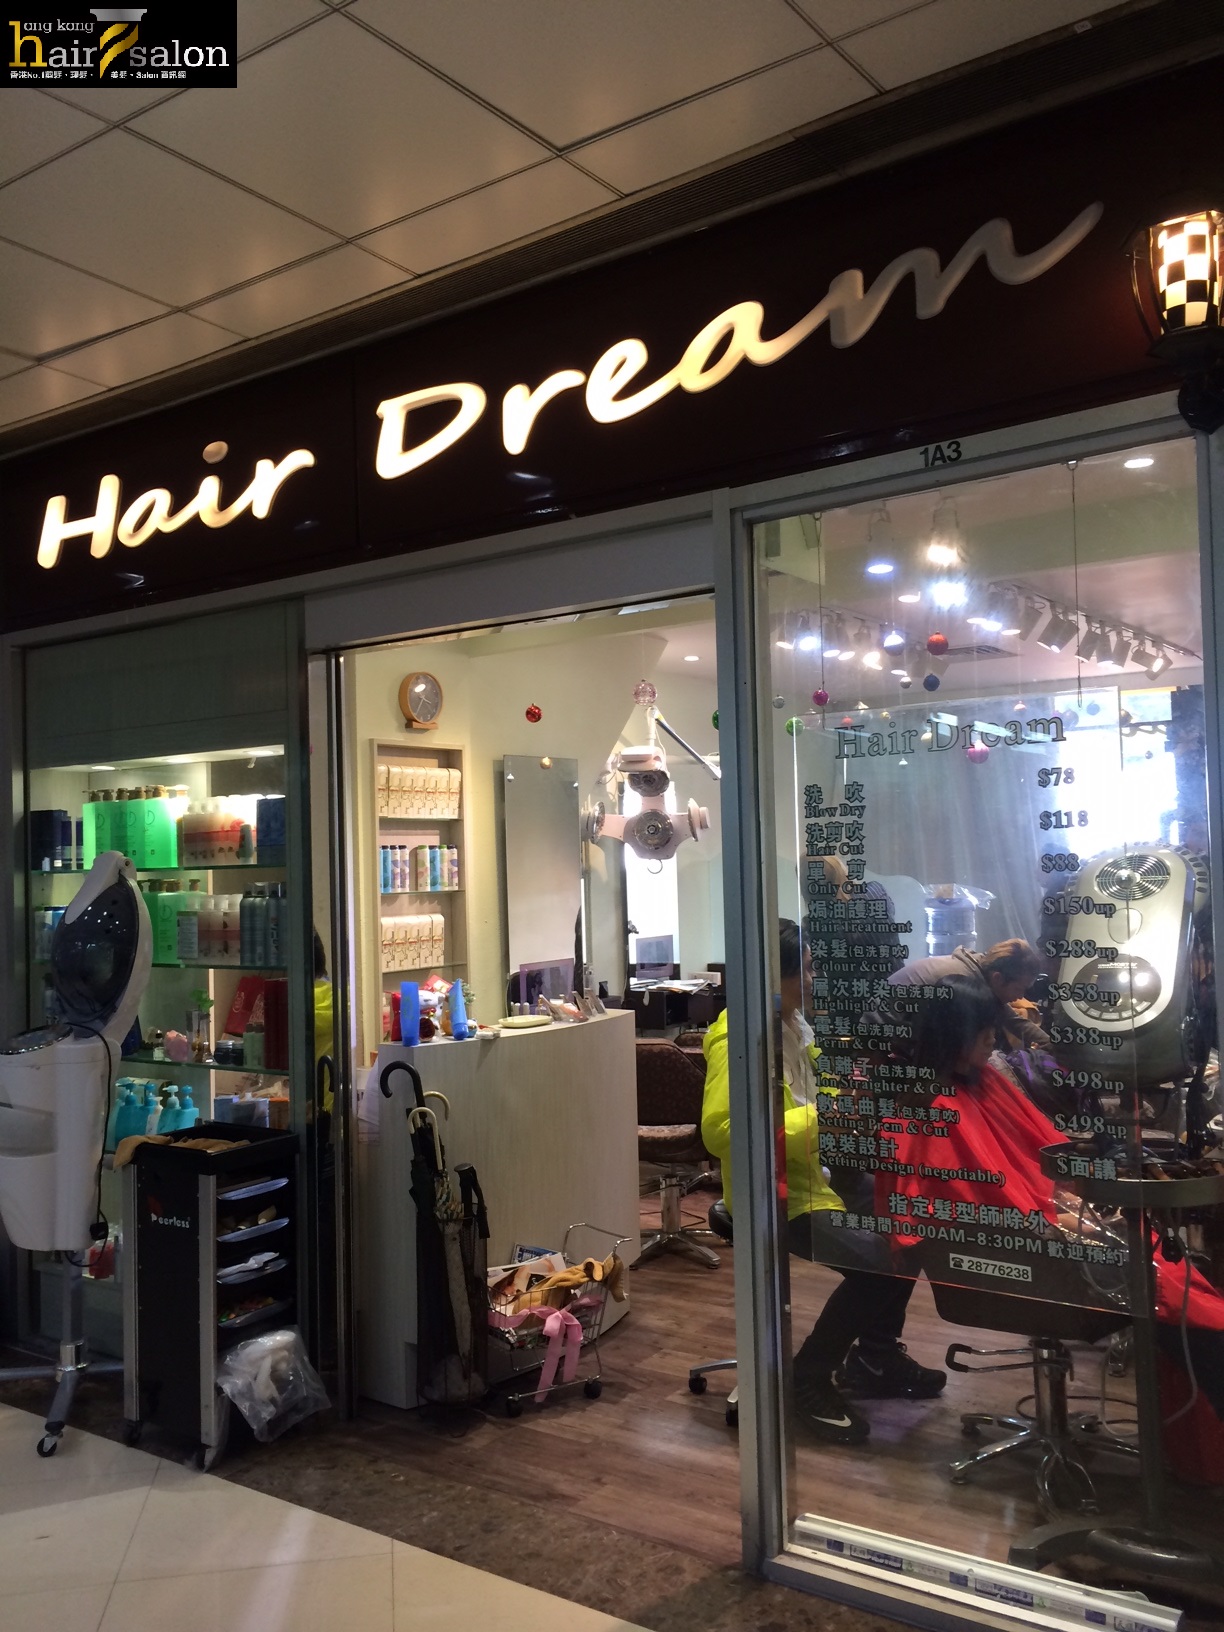 髮型屋: Hair Dream